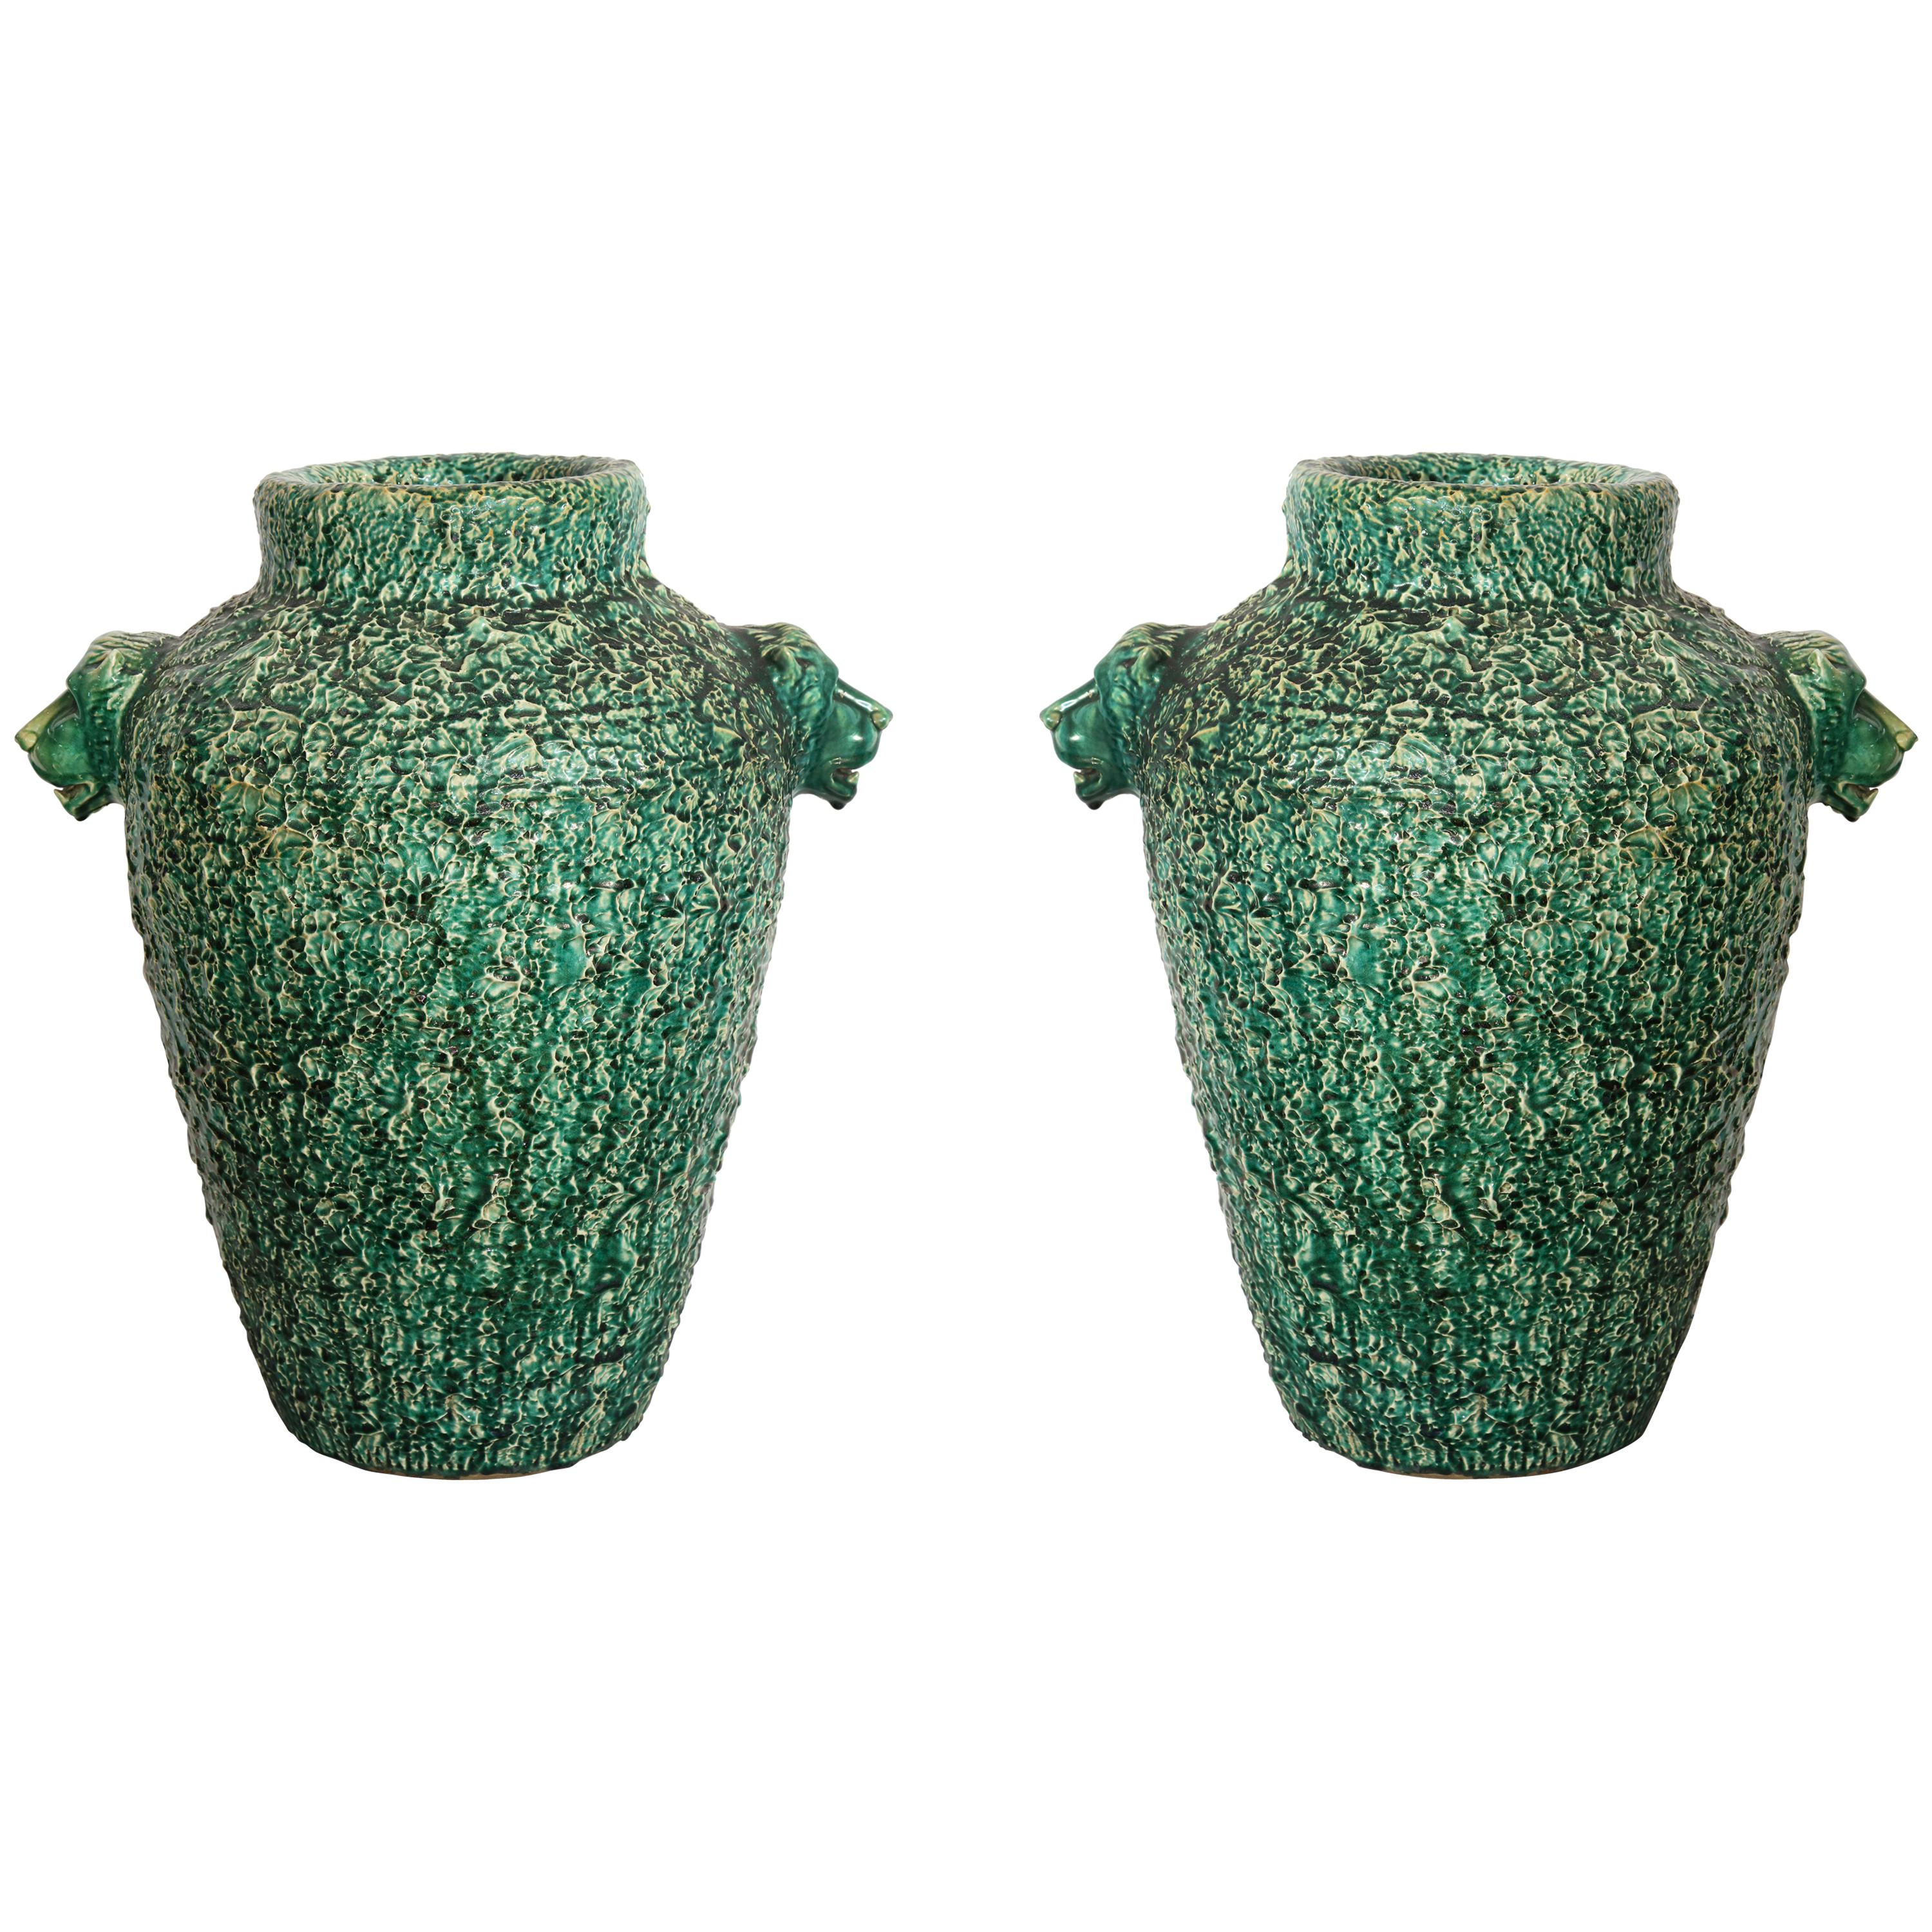 Pair of Monumental Ceramic Urns